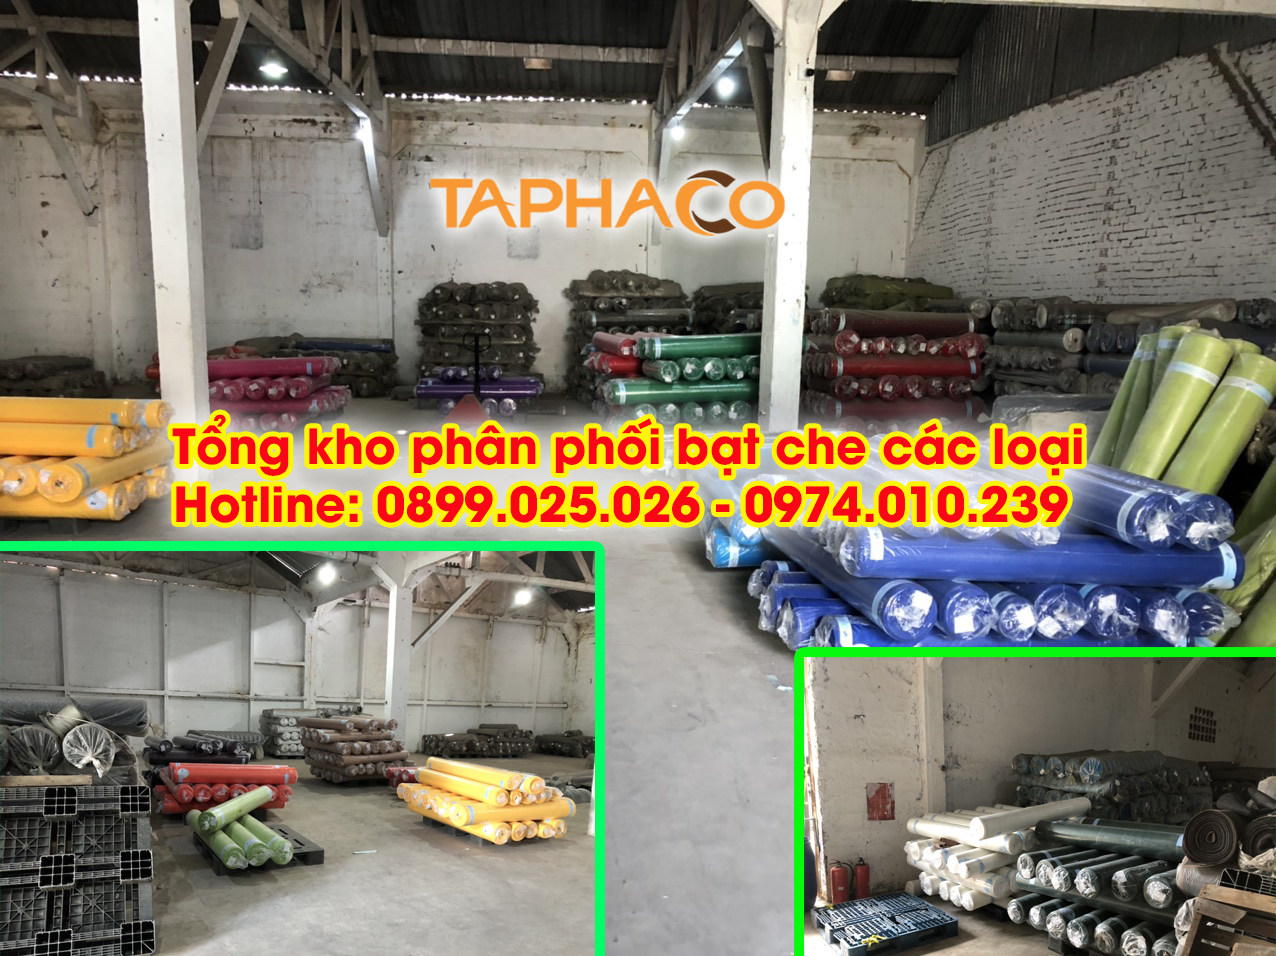 Tổng kho bạt nhựa giá rẻ TaphaCo